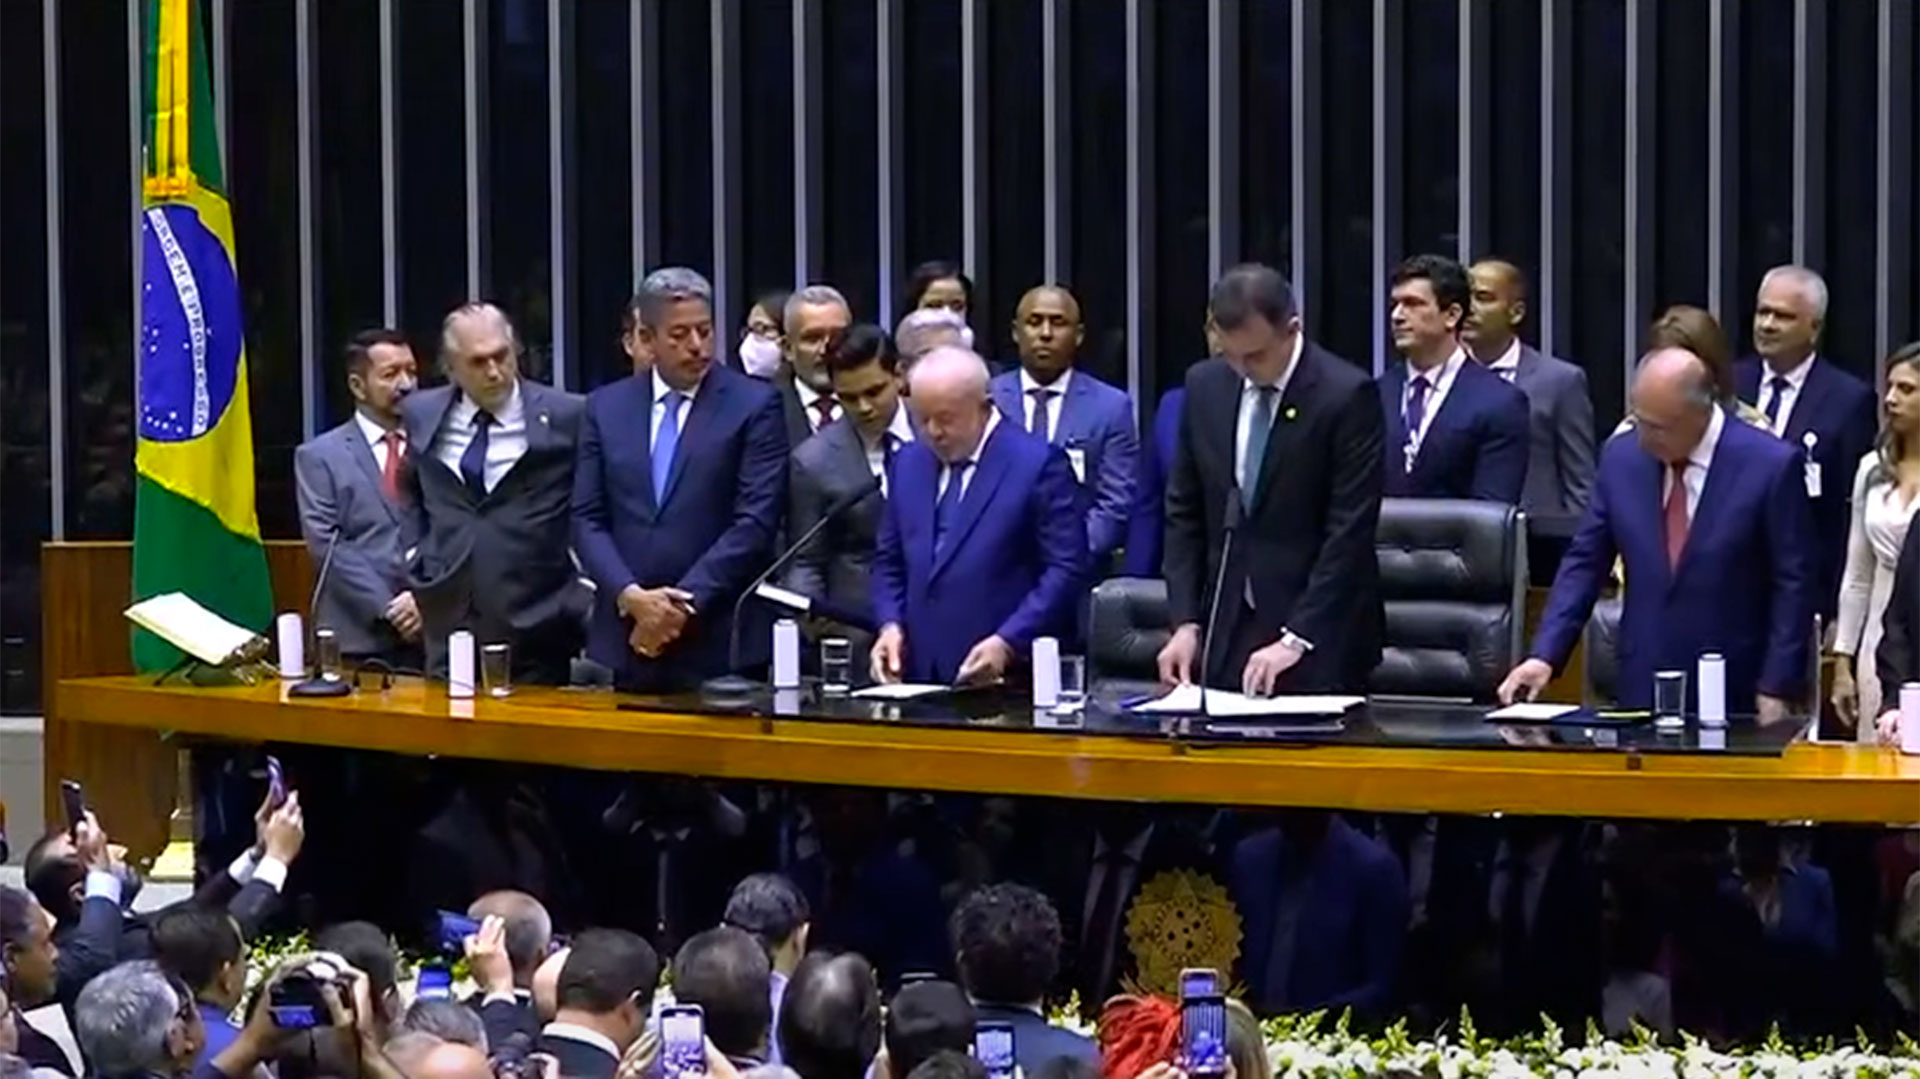 Una imagen de la asunción de Lula el 1 de enero. Maduro no asistió aunque había prometido su presencia.